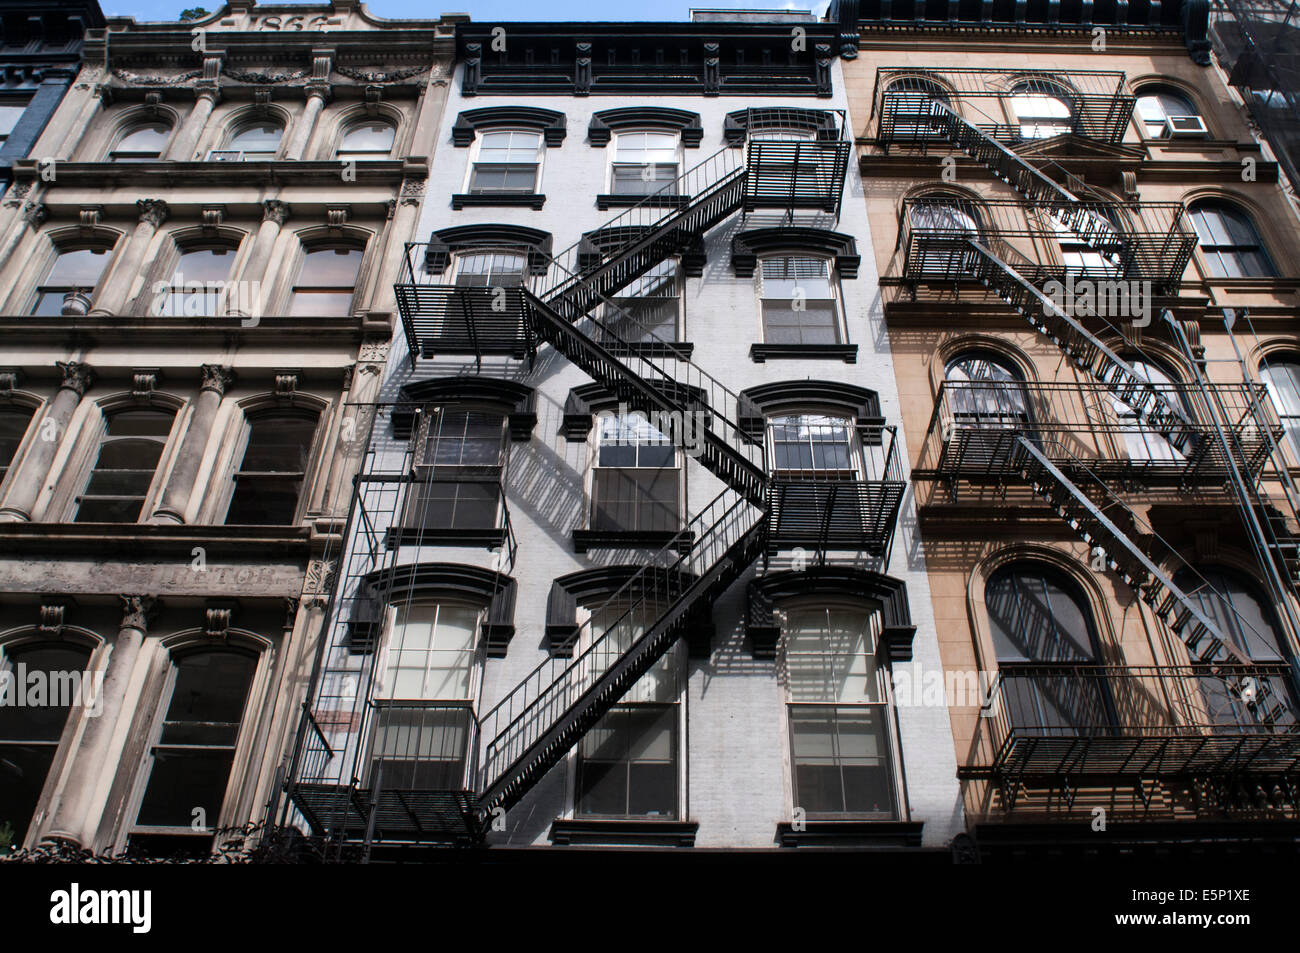 Feuerleiter, Tribeca, Manhattan, New York City, New York. Eine Feuerleiter ist eine besondere Art der Notausgang, in der Regel montiert Stockfoto